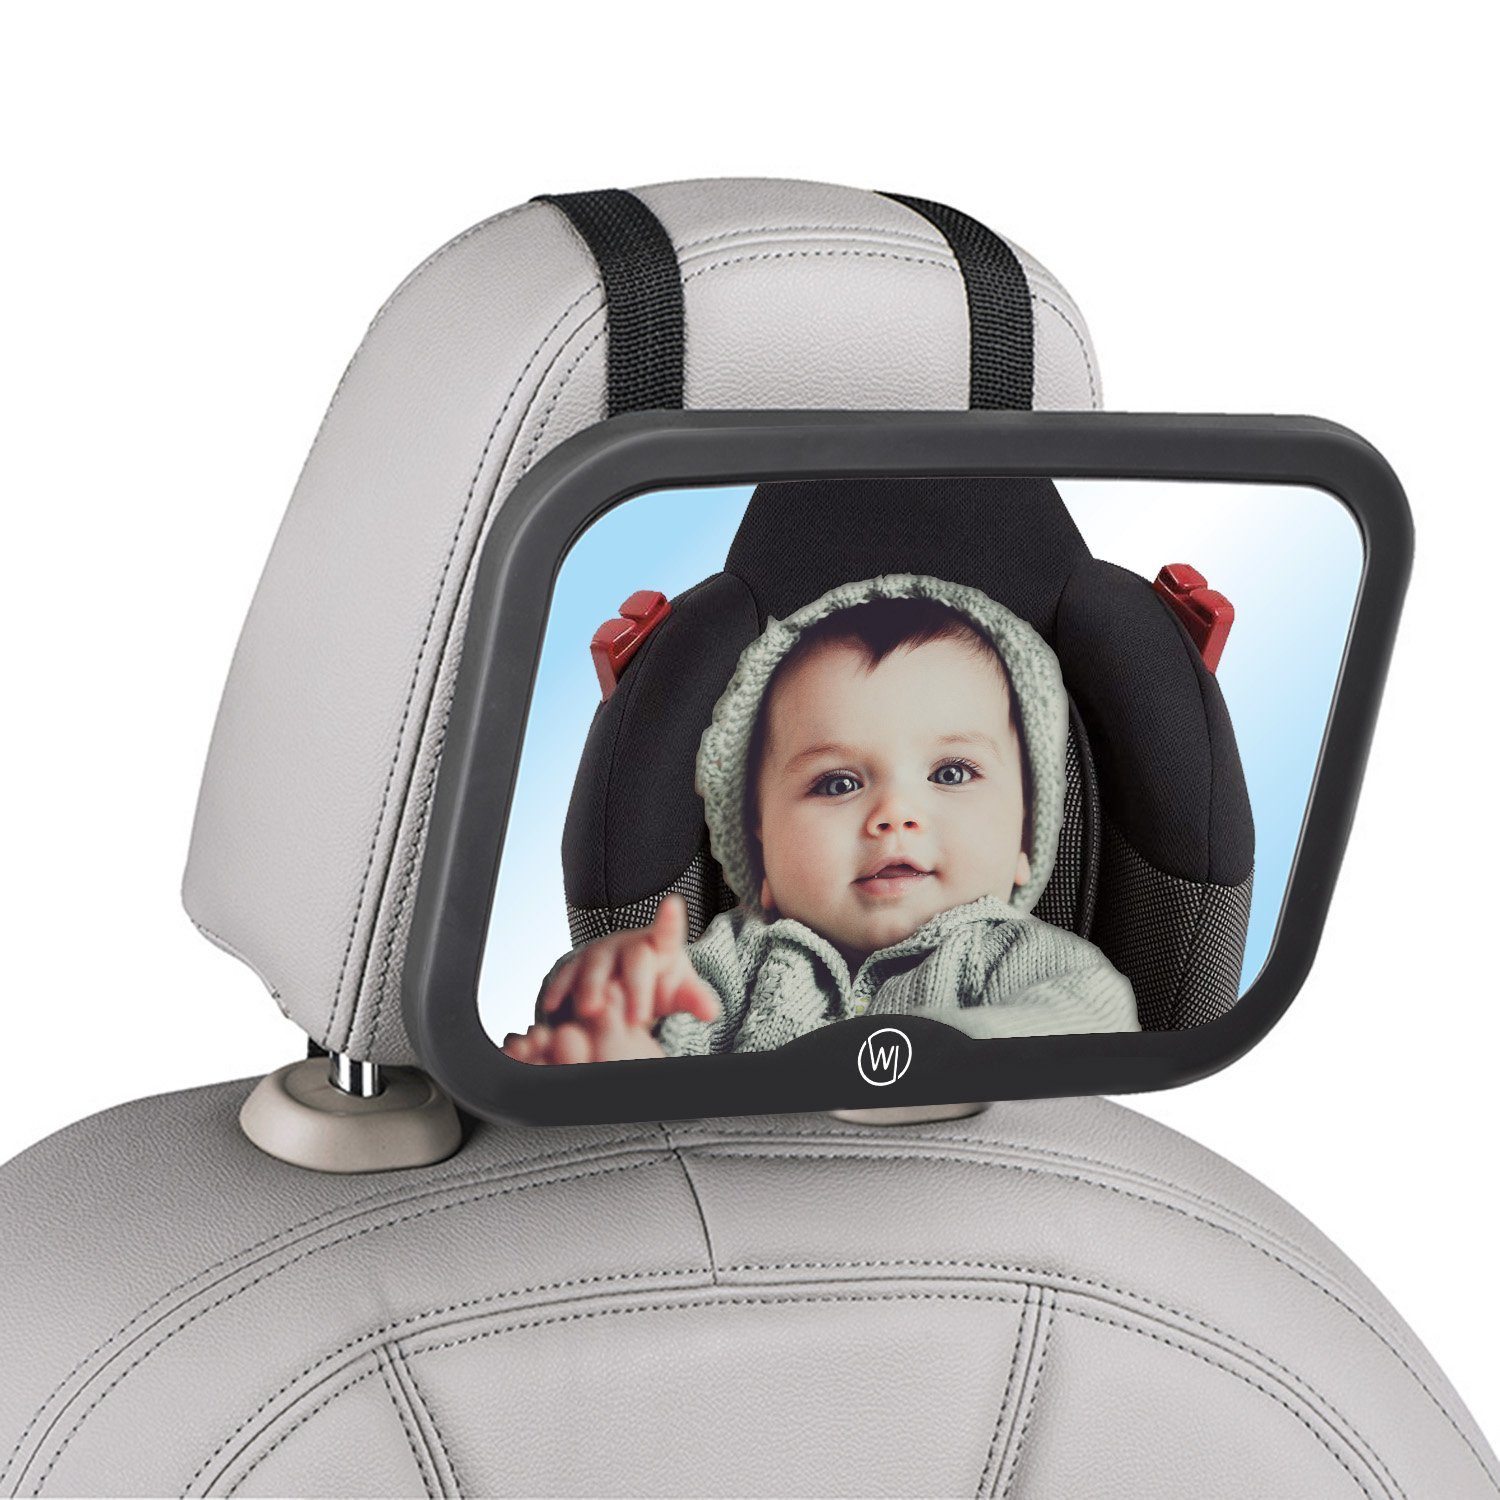 Kind Rücksitzspiegel für Babys Babyspiegel zur Beobachtung Ihres Babys im Auto 